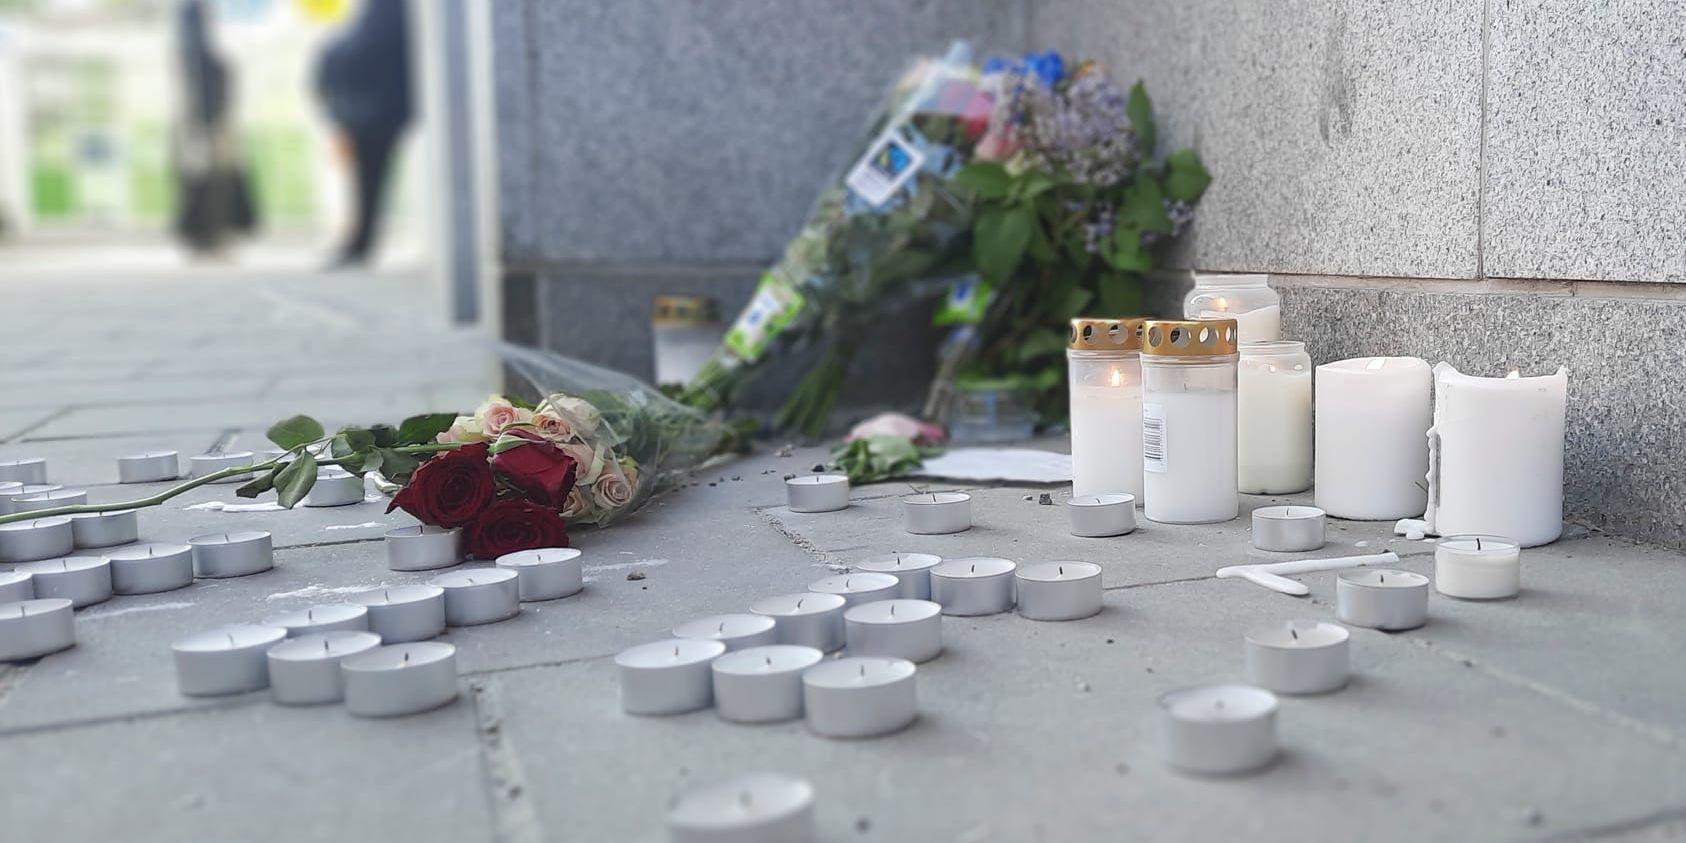 Blommor vid platsen där en ung man dödades under torsdagskvällen i Älvsjö.